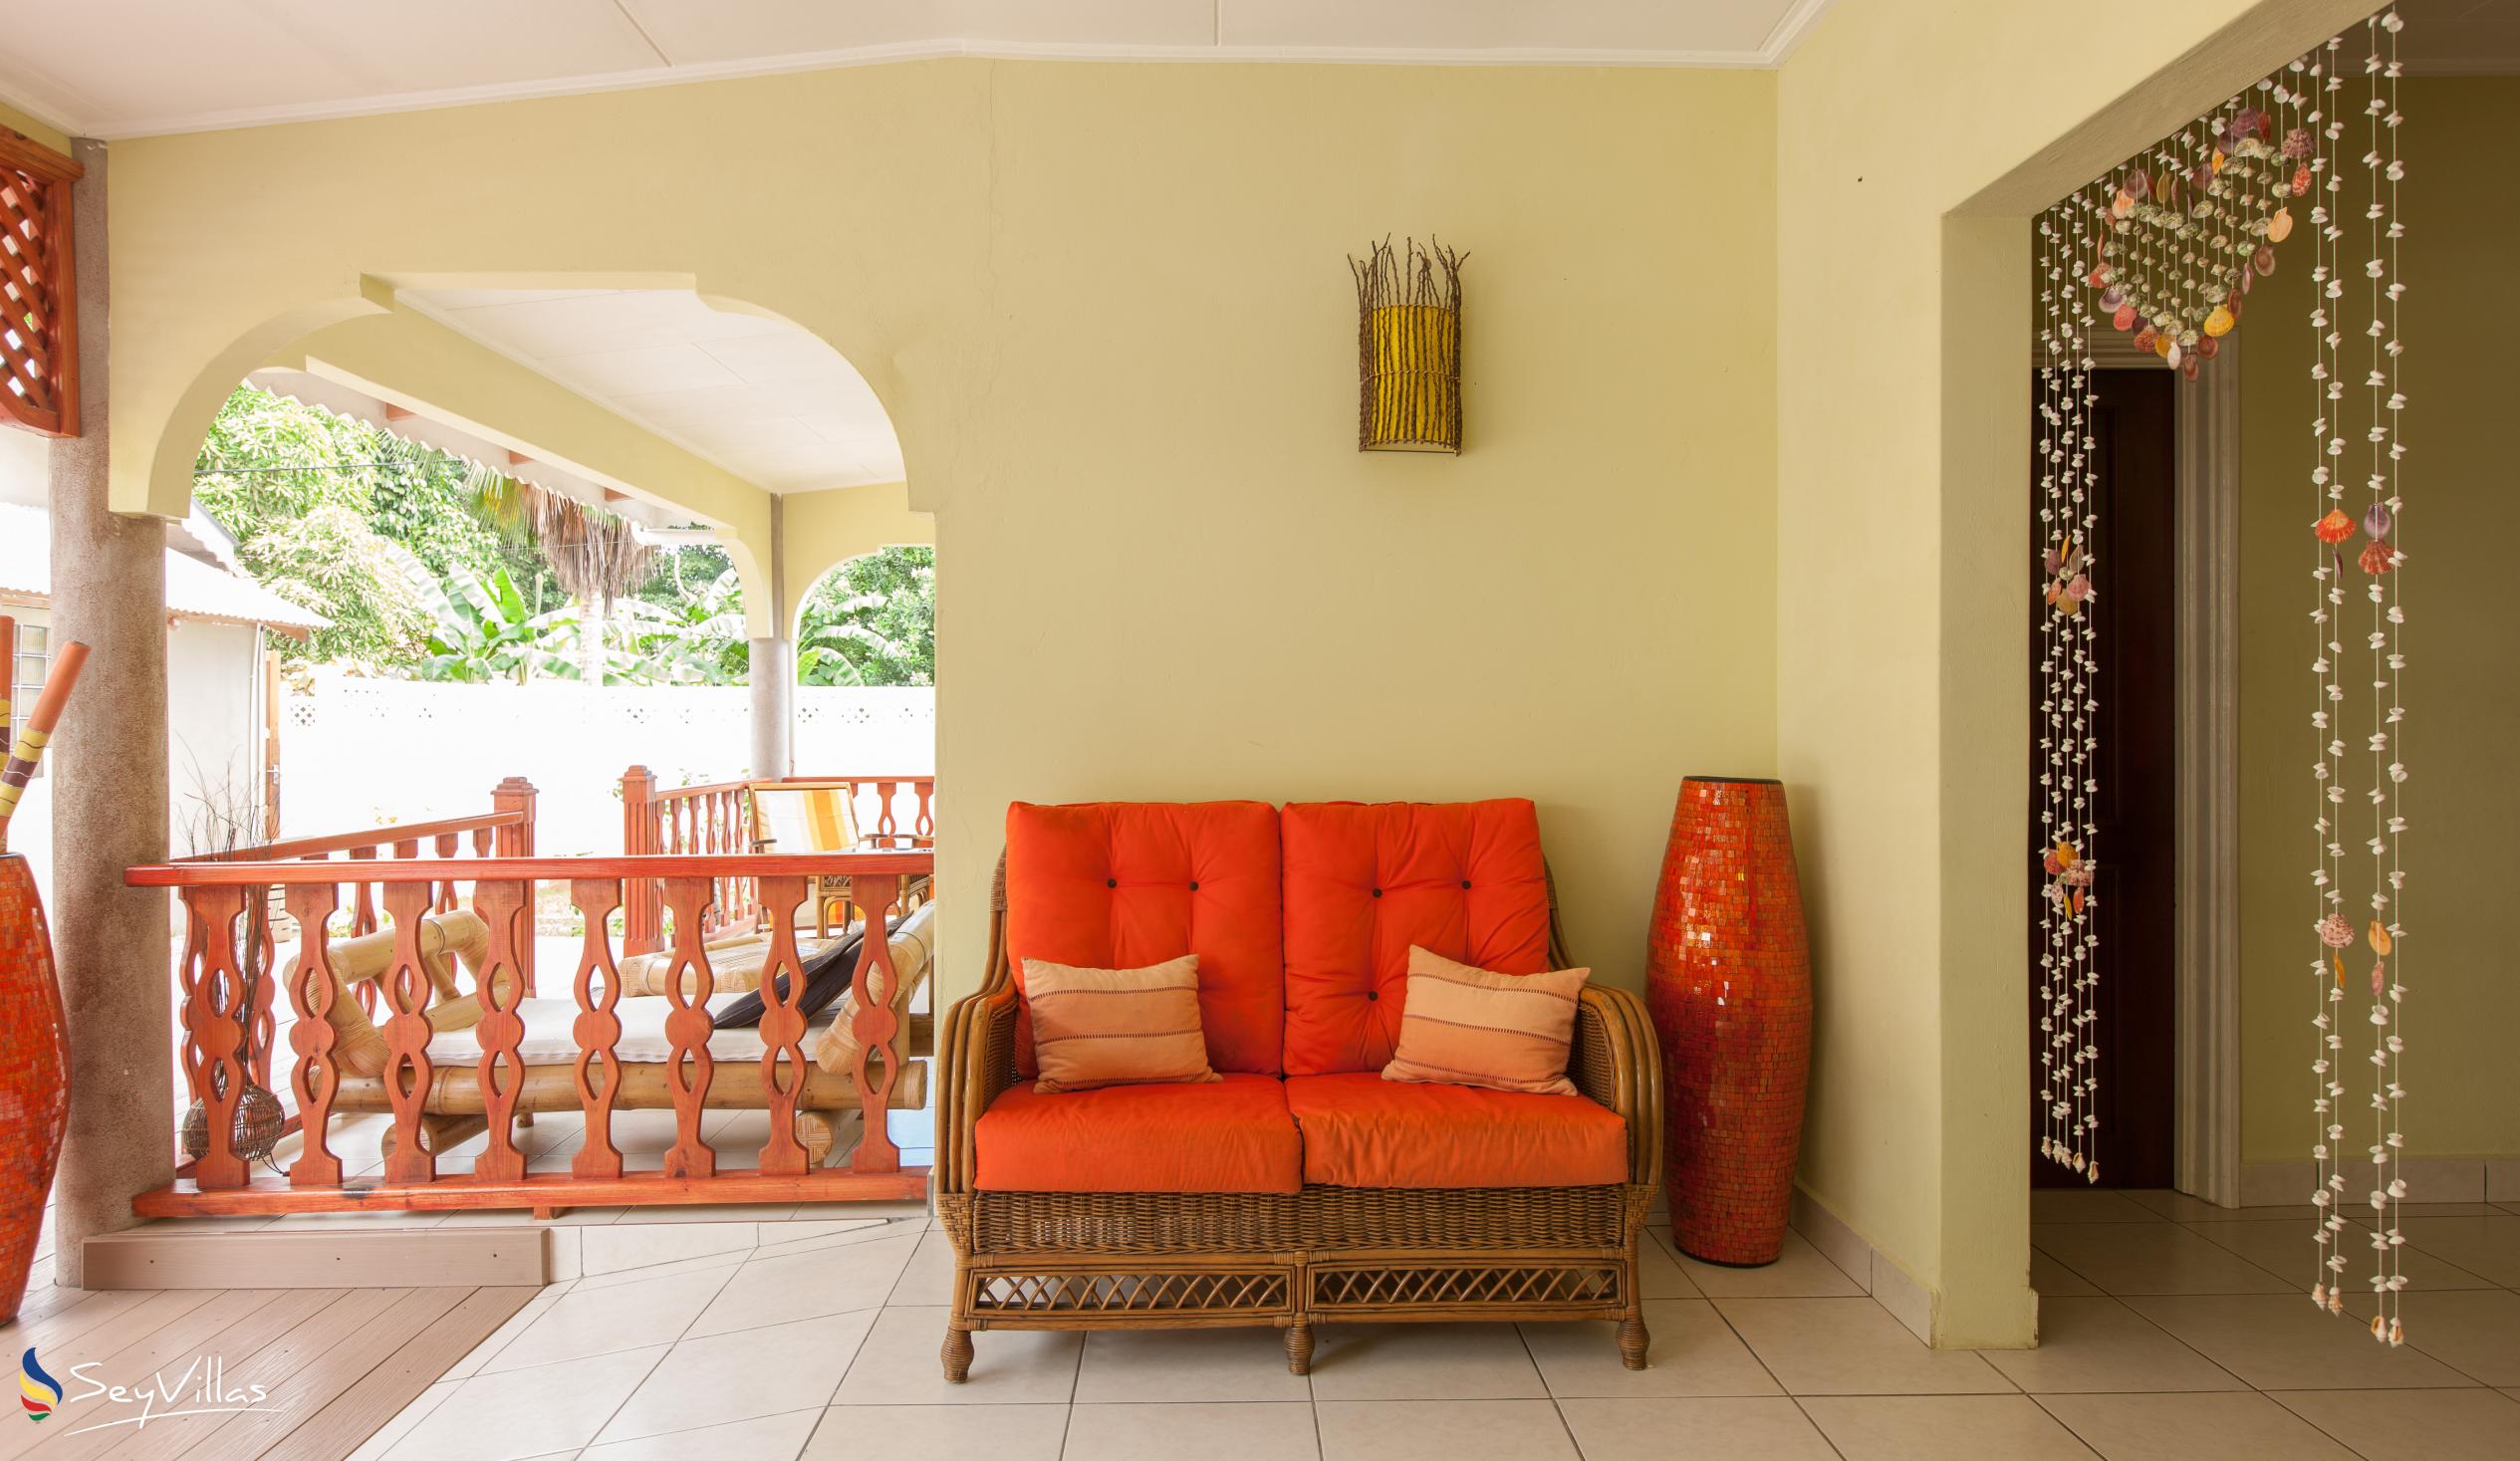 Photo 20: Villa Authentique - King Room - La Digue (Seychelles)